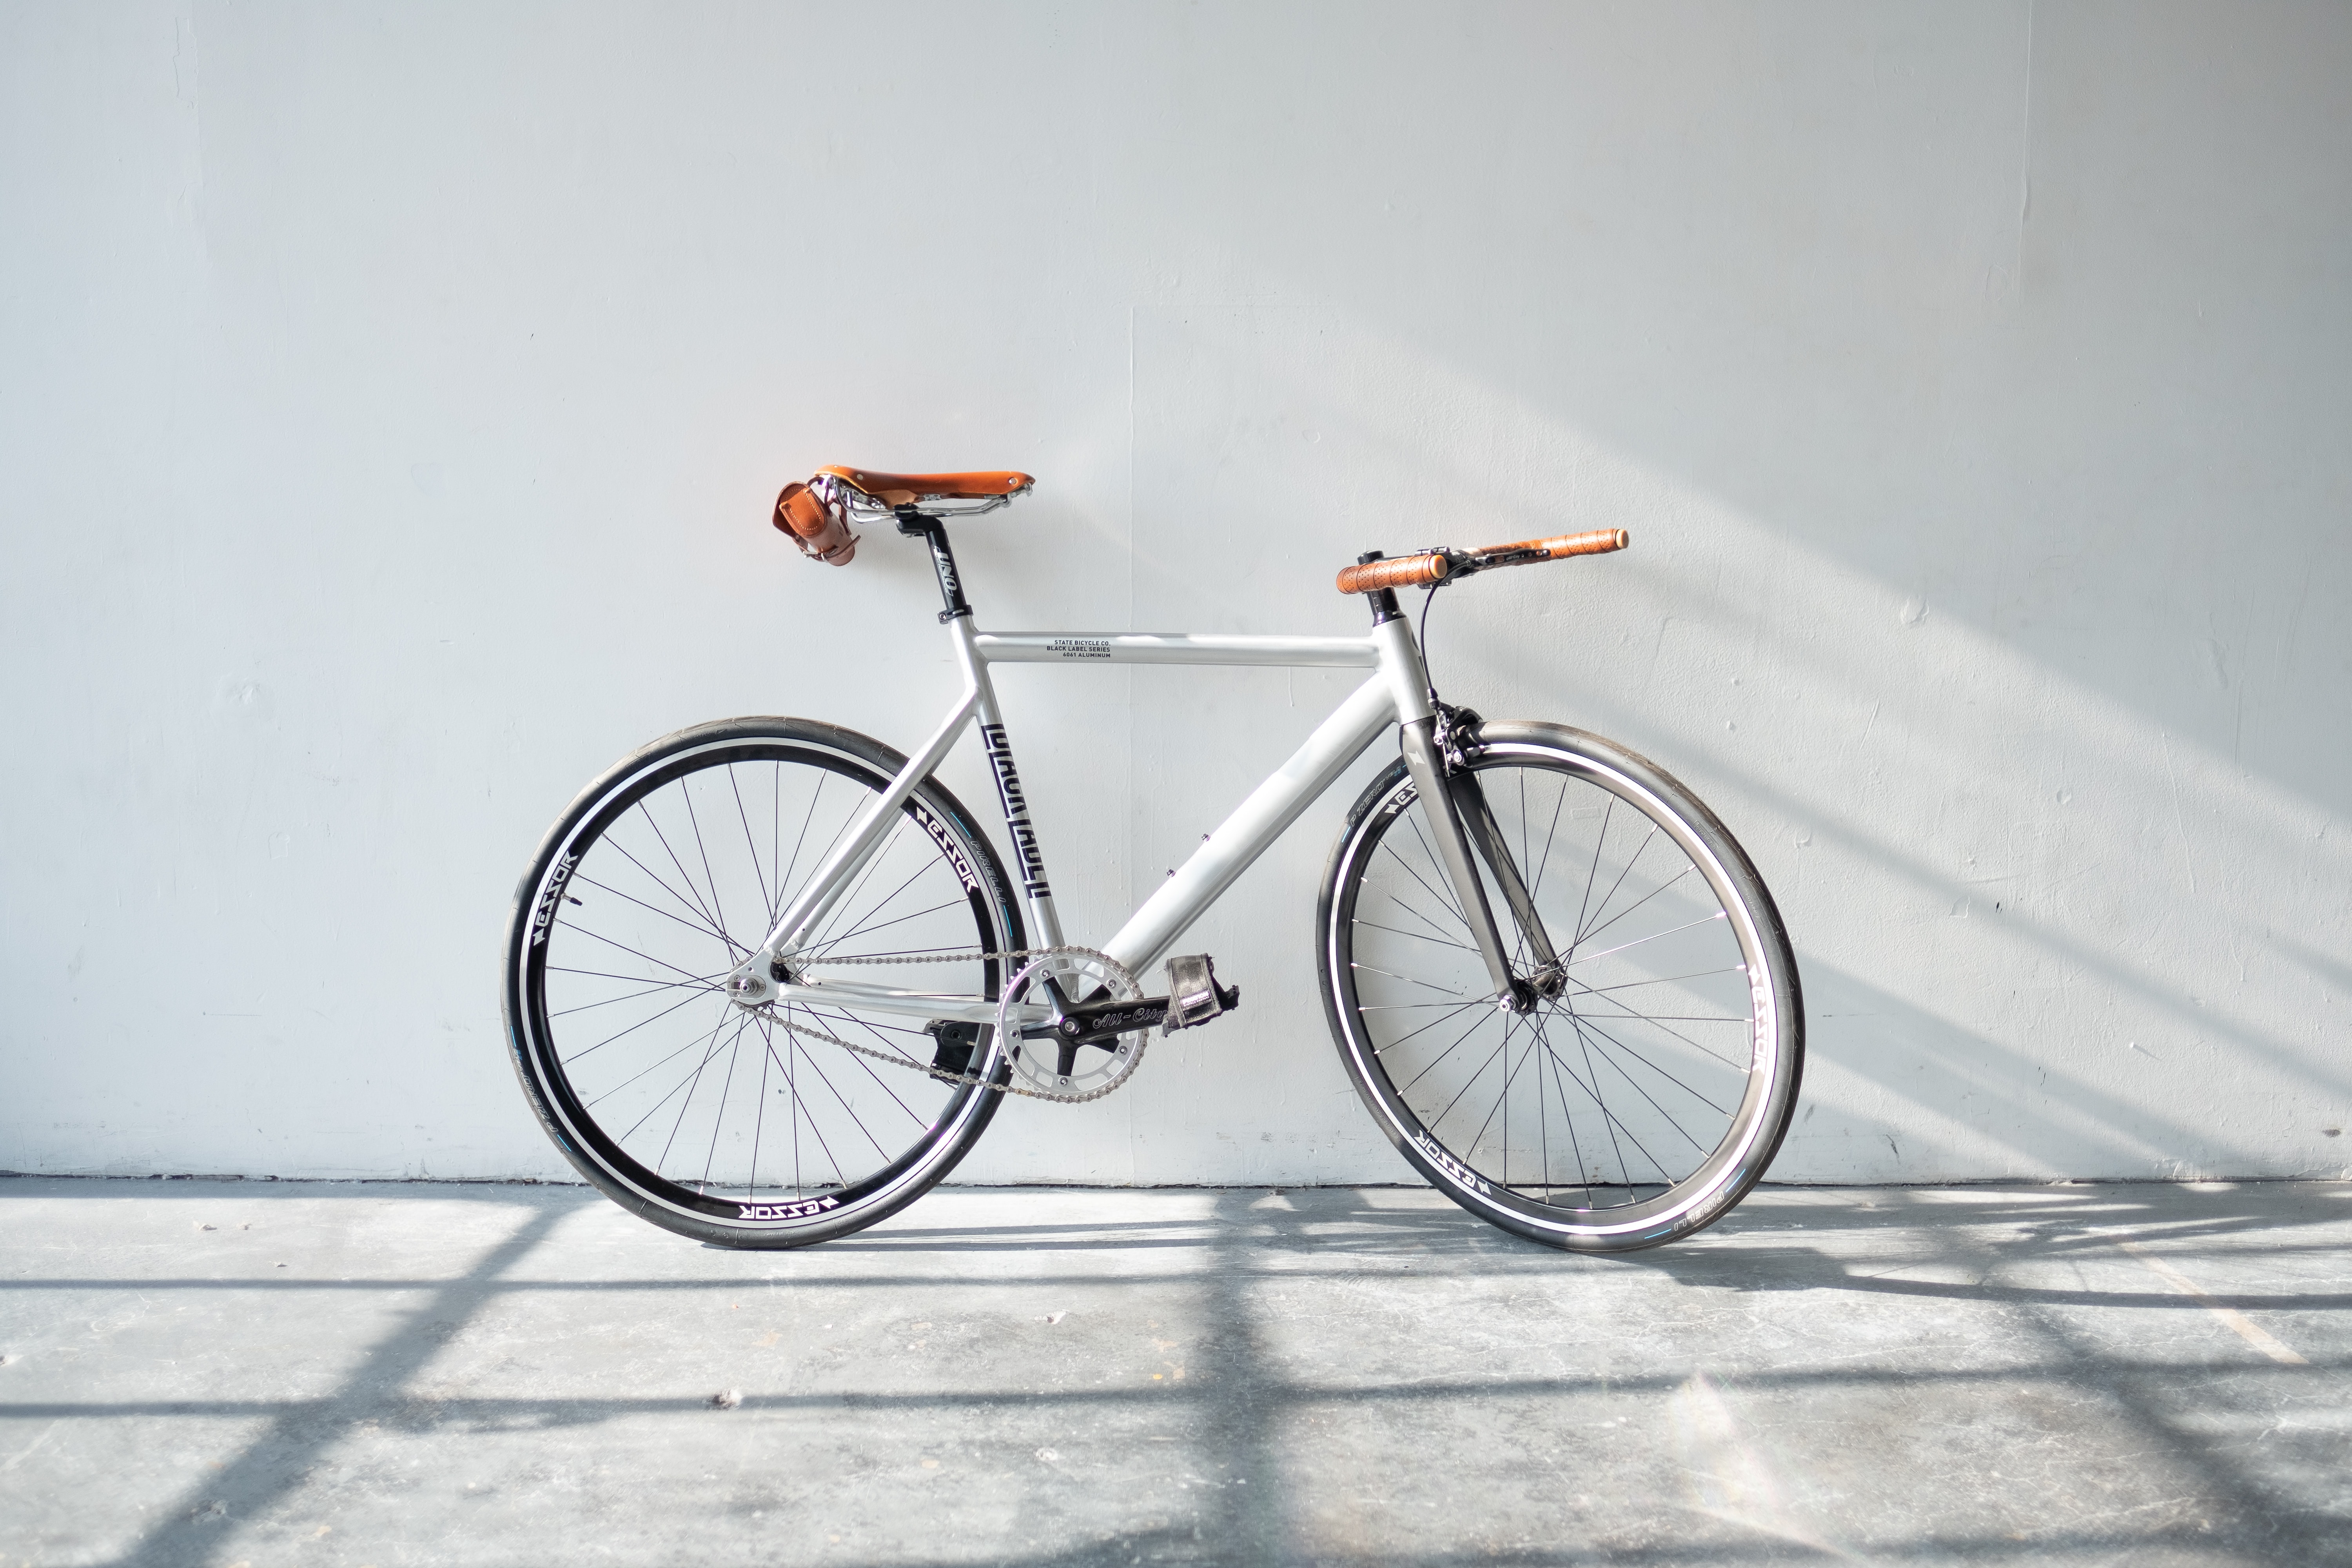 Ventajas de viajar en bici; Ana Ruth Clark y Dan Noyola nos cuentan su cambio de vida gracias a la bicicleta